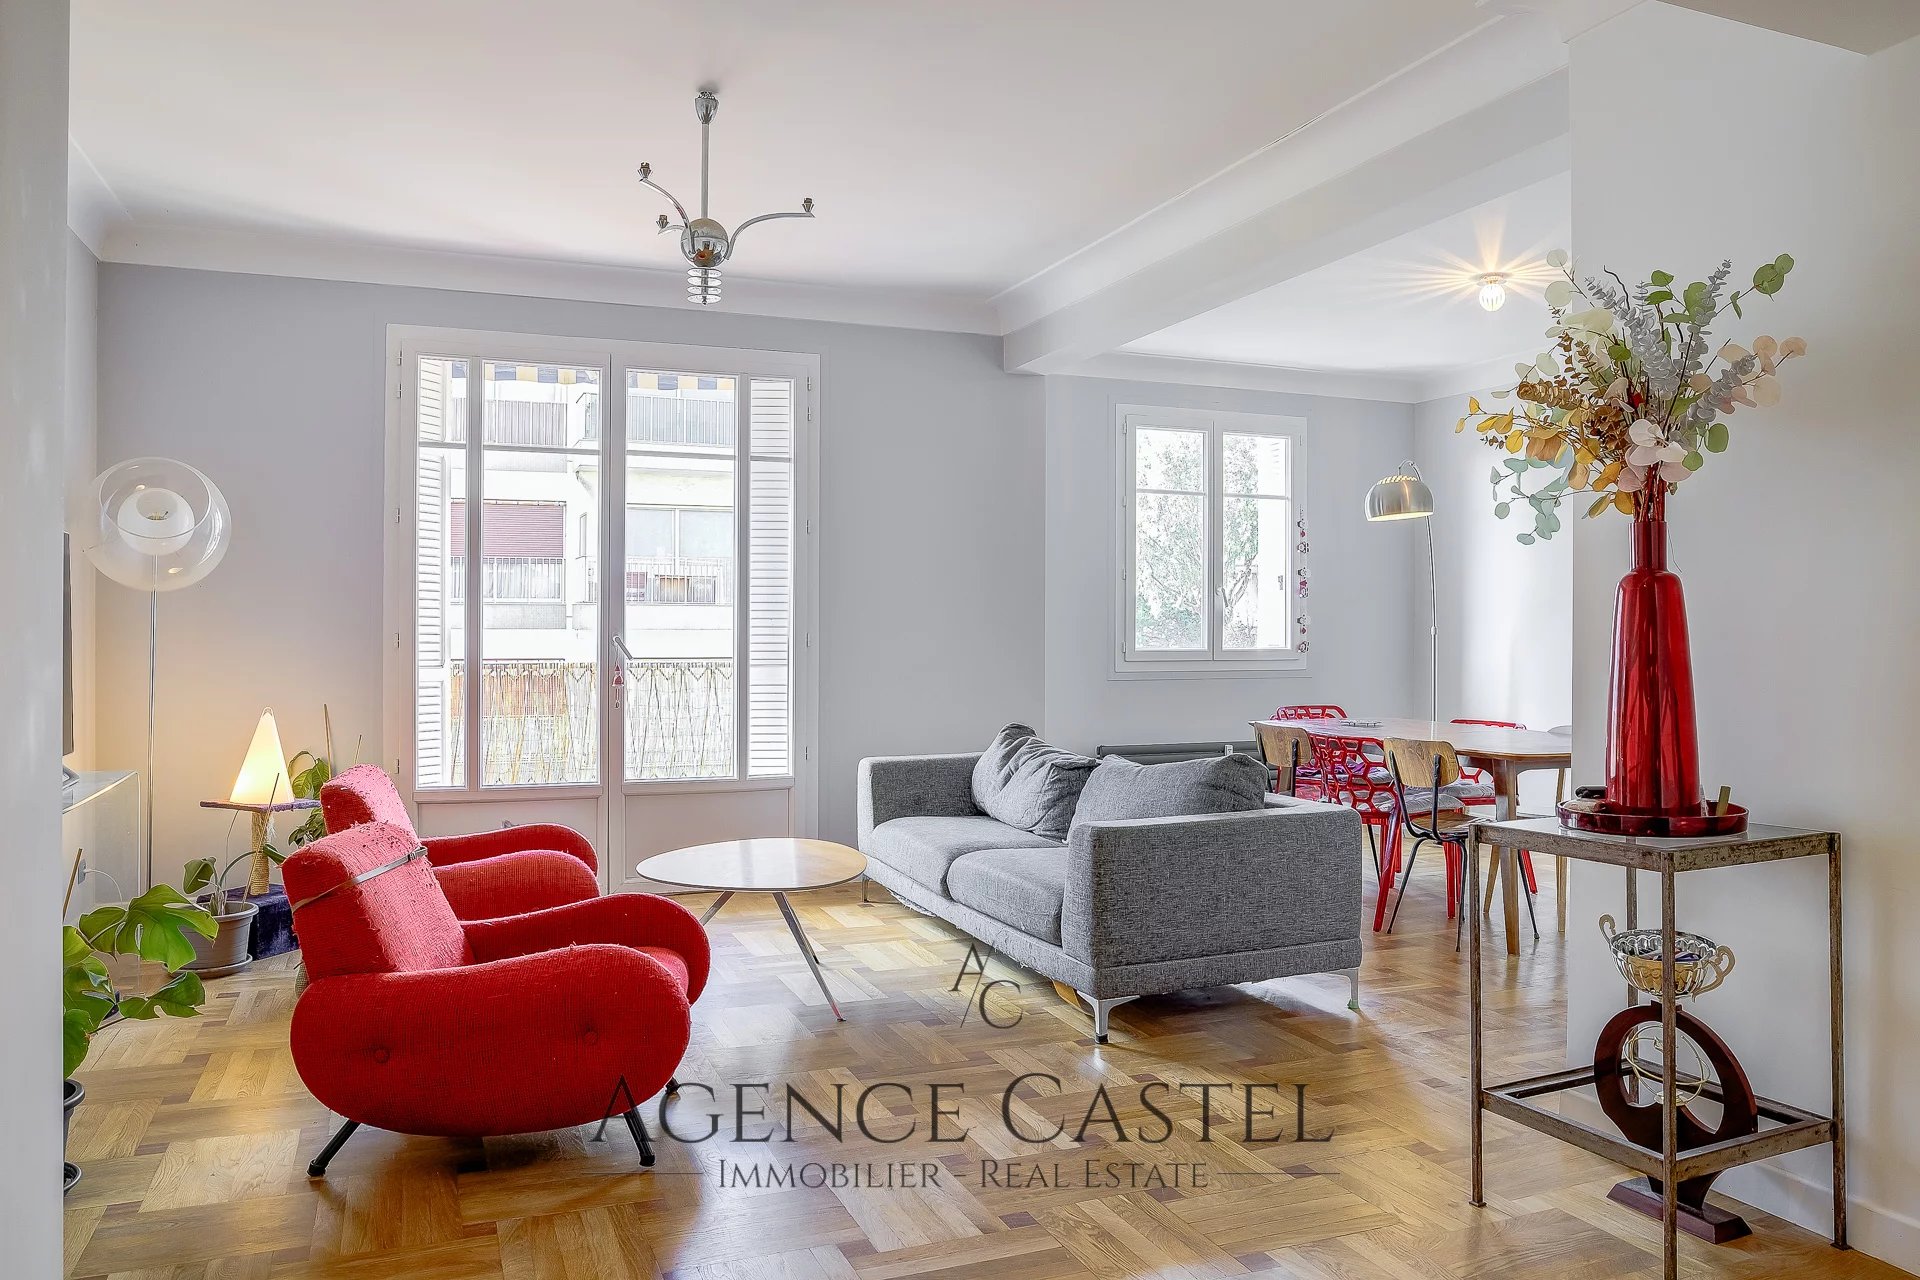 Vente Appartement 89m² 3 Pièces à Nice (06000) - Agence Castel